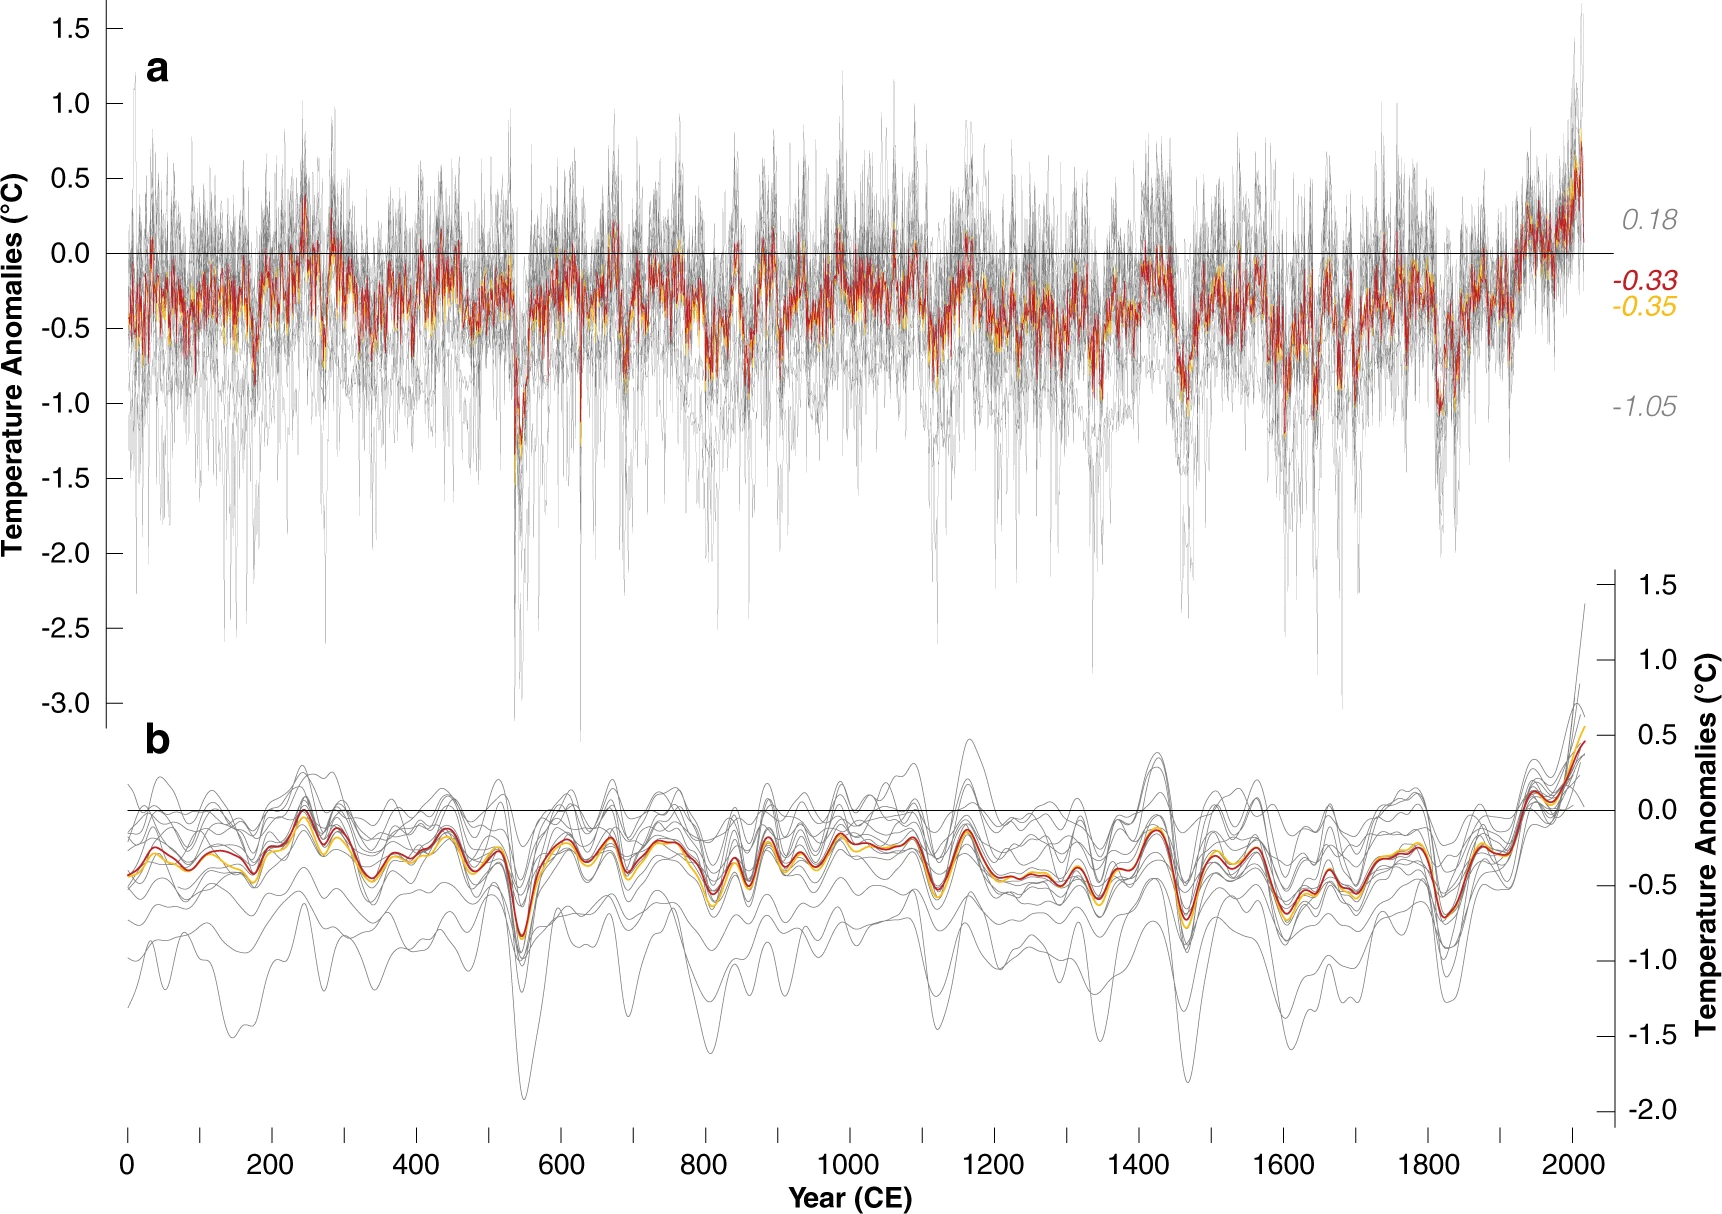 La ricostruzione della temperatura negli ultimi 2.000 anni